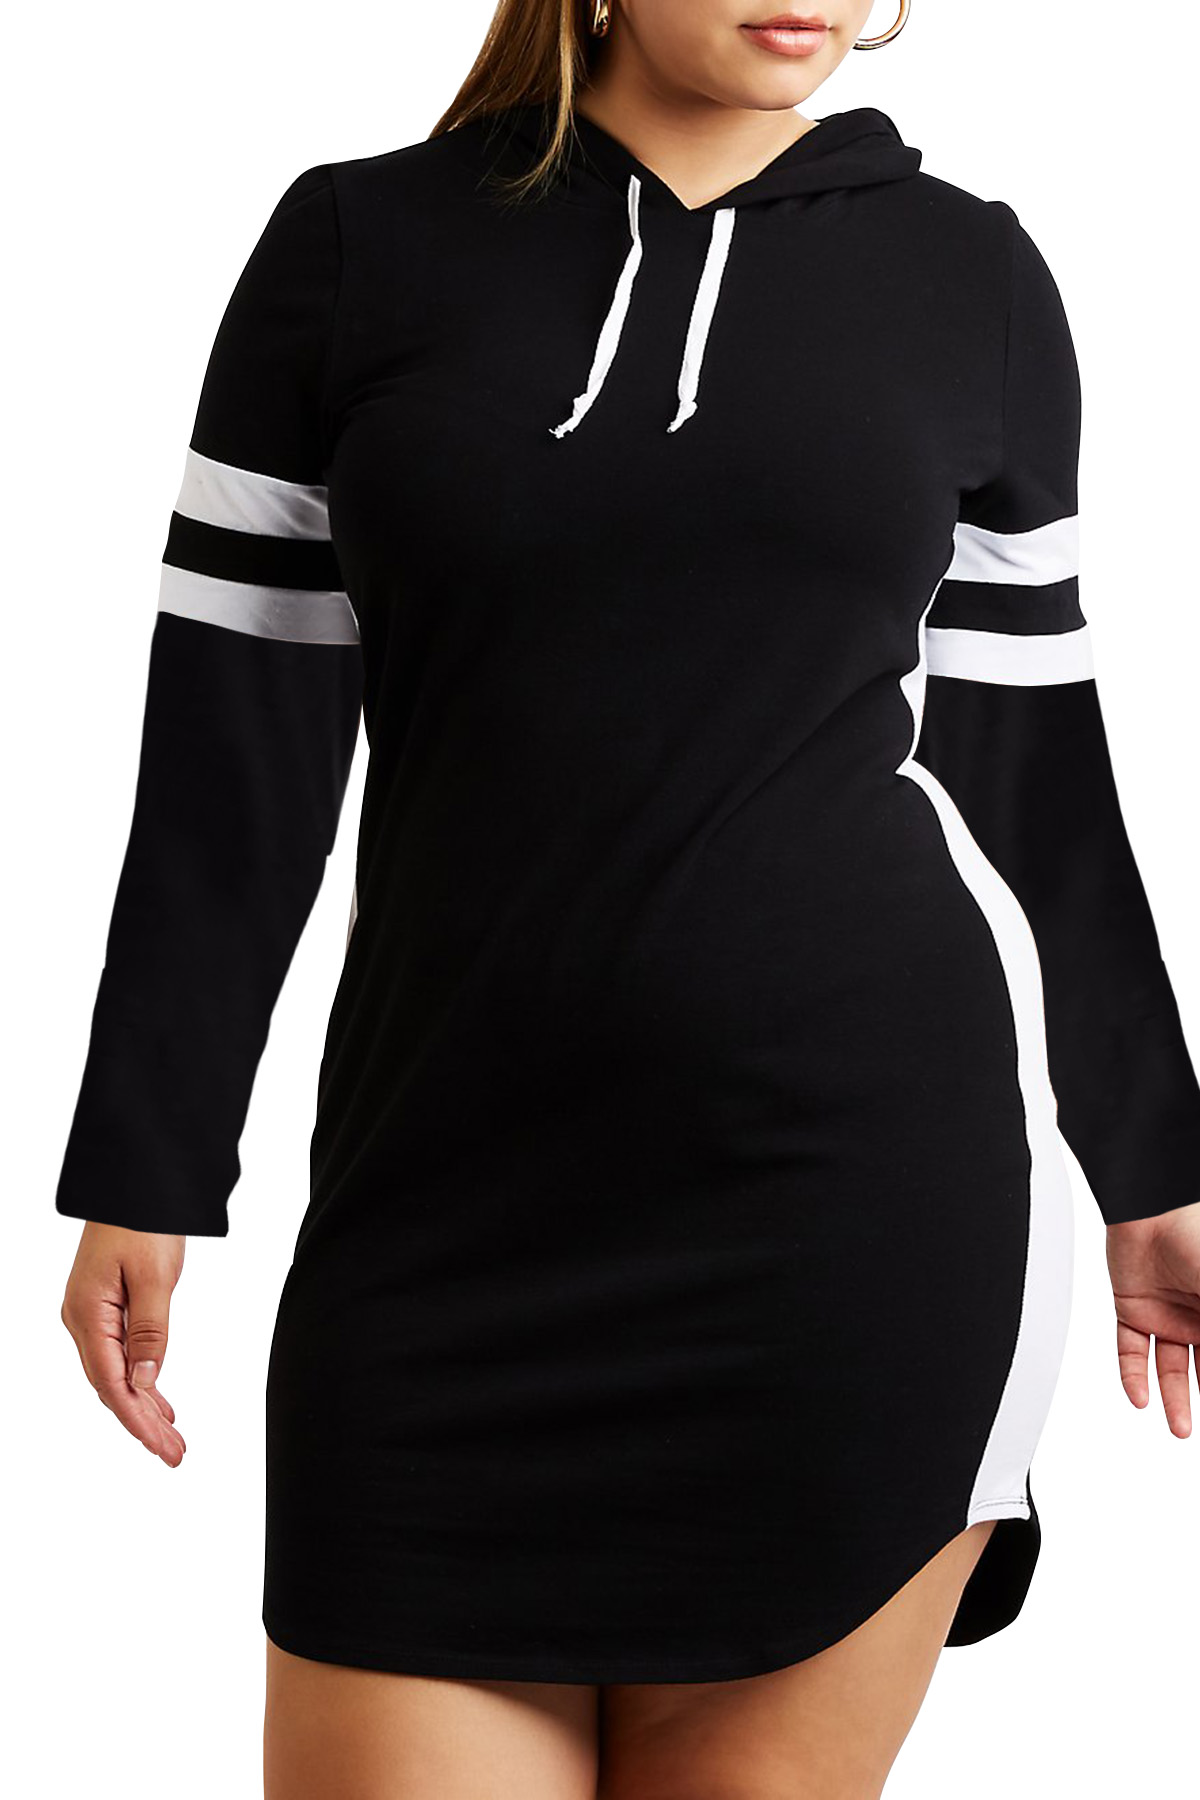 Черное платье-толстовка с капюшоном и белыми контрастными полосами арт. 75519